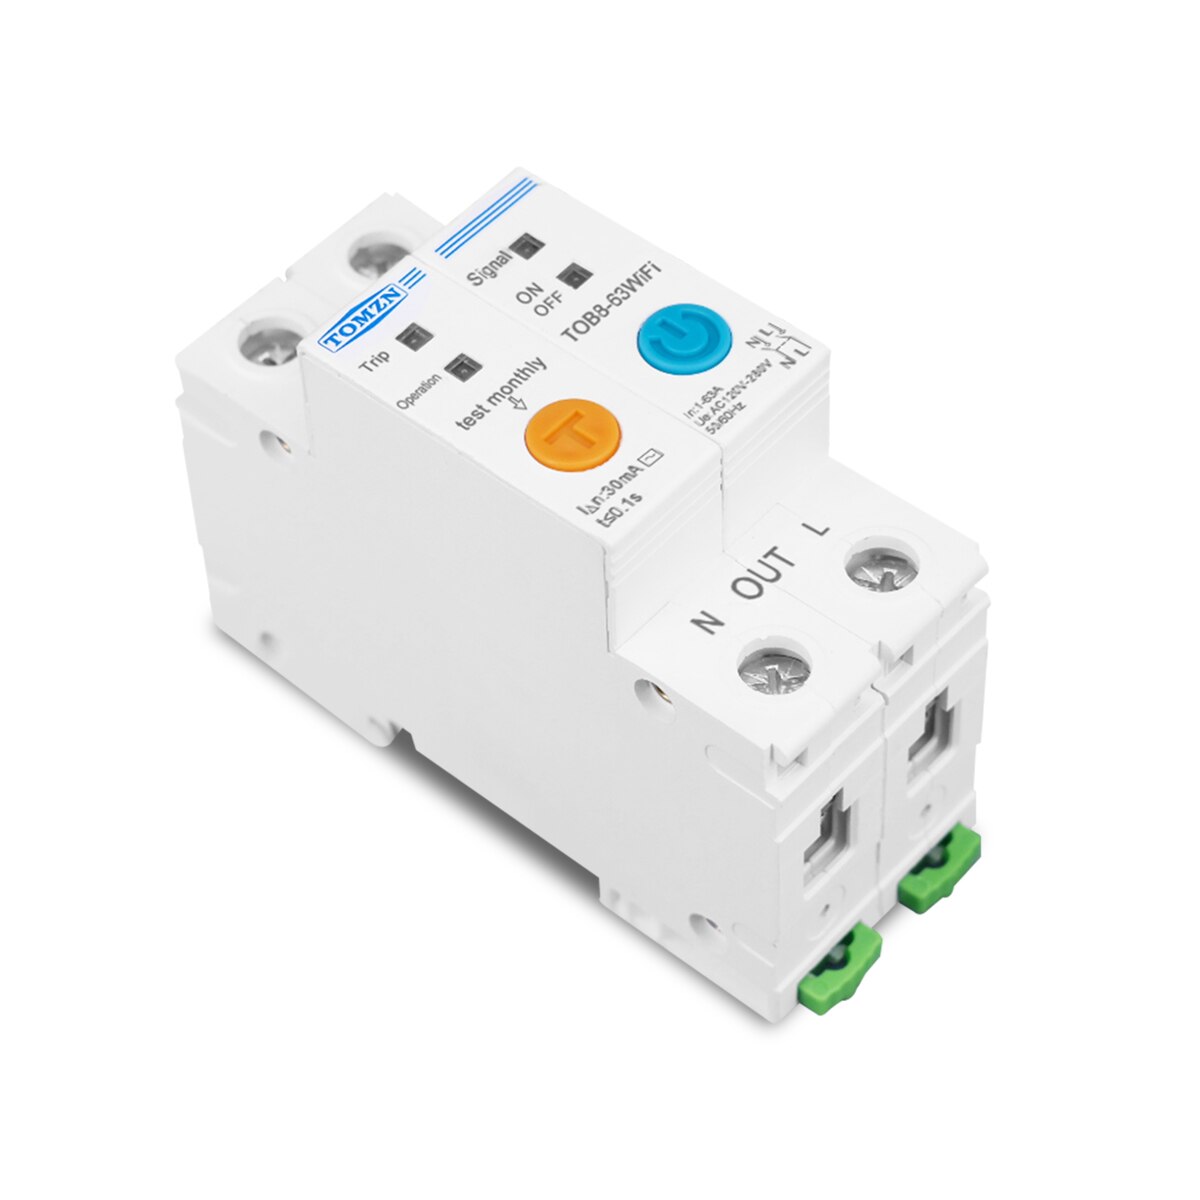 Eenfase Wifi Smart Energy Meter Kwh Metering Monitoring Circuit Breaker Timer Relais Met Lekkage Bescherming 63A Ewelink